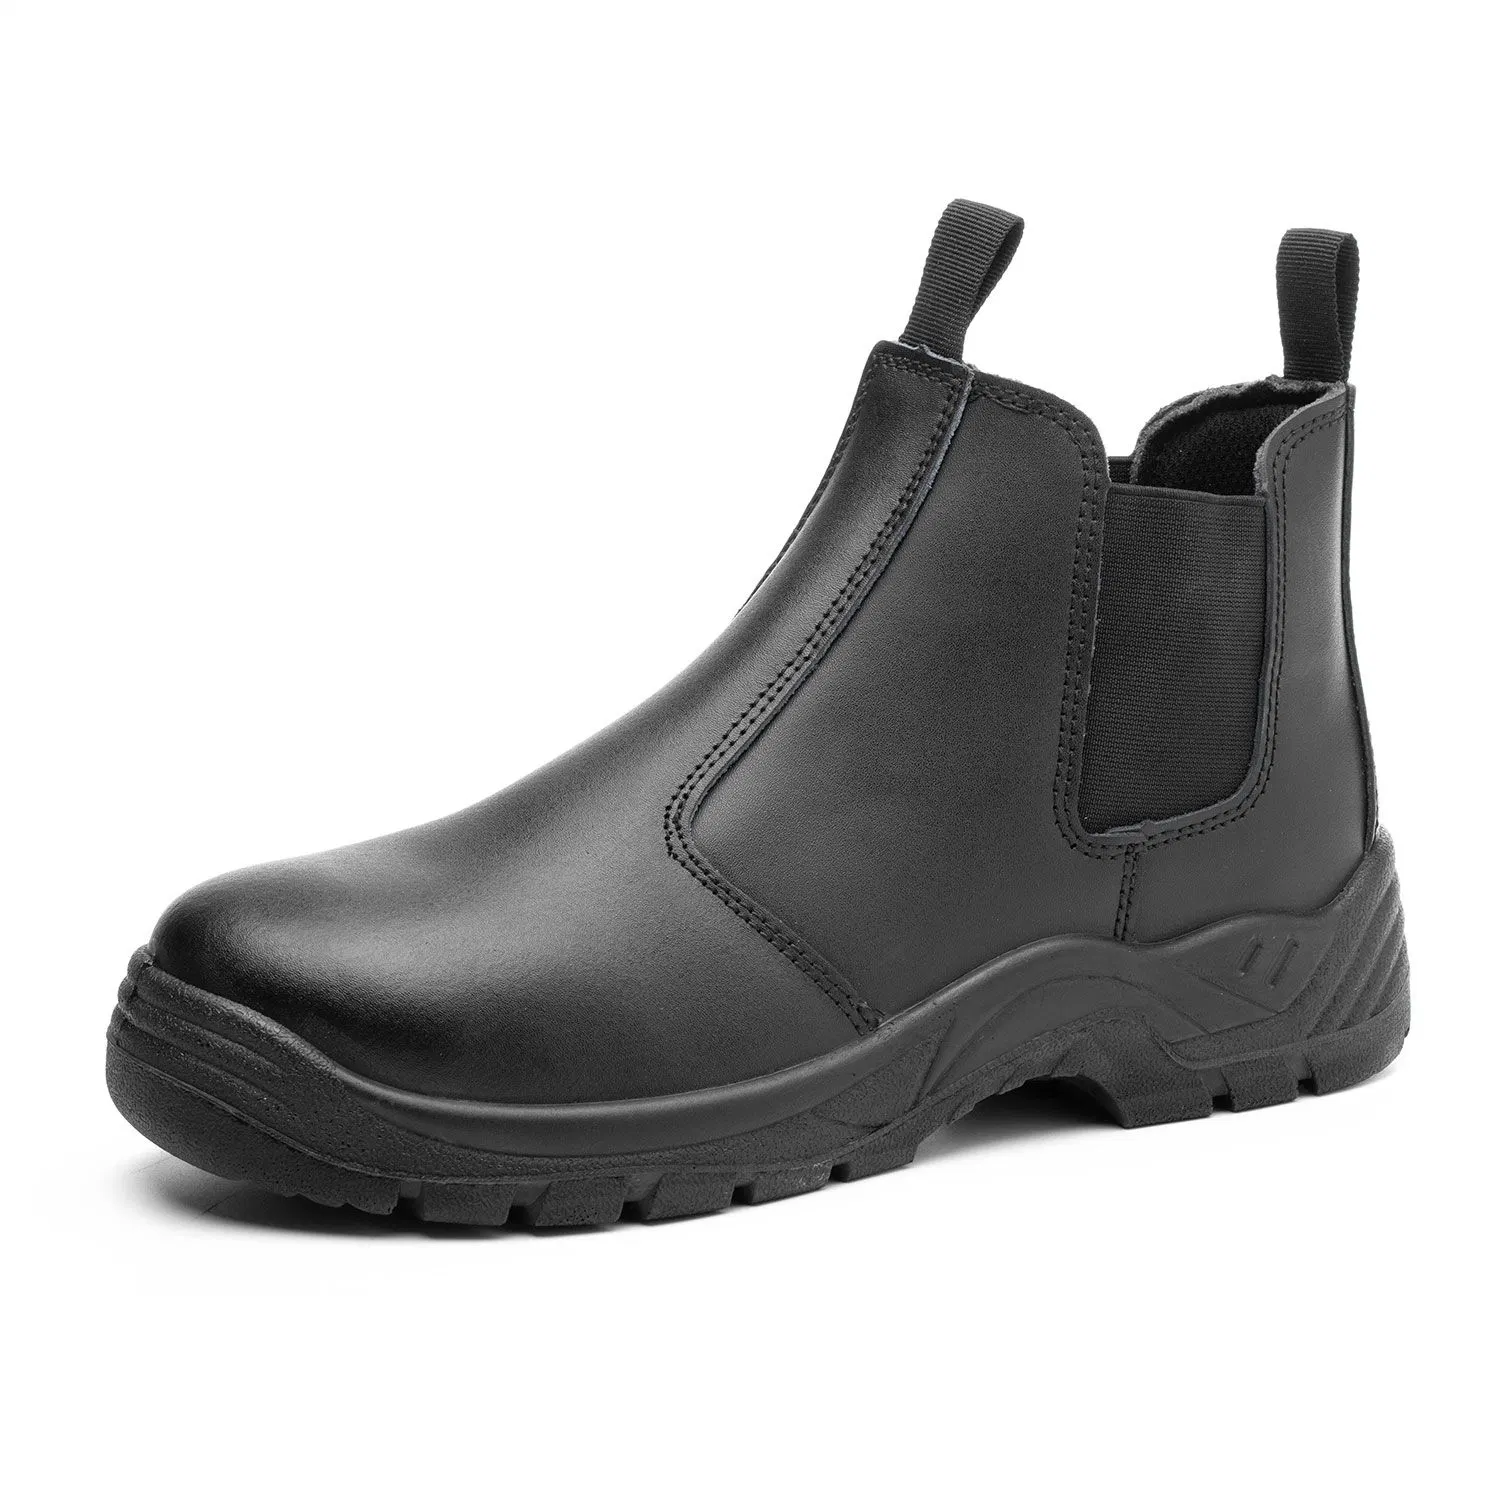 Chelsea Leather Work botas de seguridad Zapatos para hombre con acero Puntera